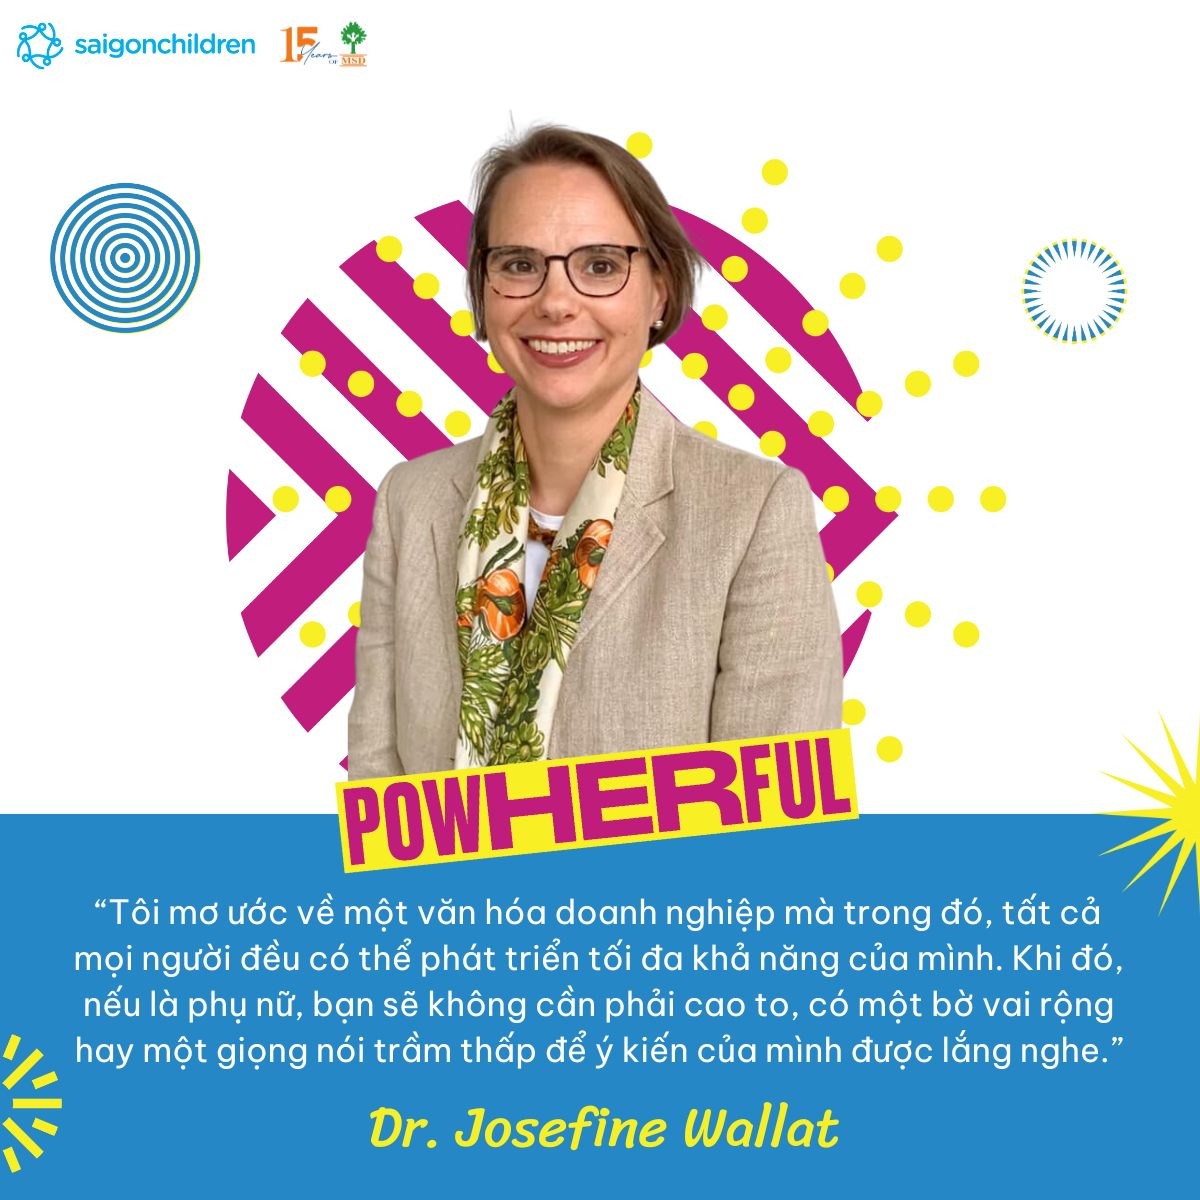 Với hơn 20 năm làm trong ngành ngoại giao, Tiến sĩ Josefine Wallat, Tổng Lãnh sự CHLB Đức tại TP. HCM, có rất nhiều trăn trở về bình đẳng giới trong nghề ngoại giao nói riêng cũng như trong xã hội nói chung.